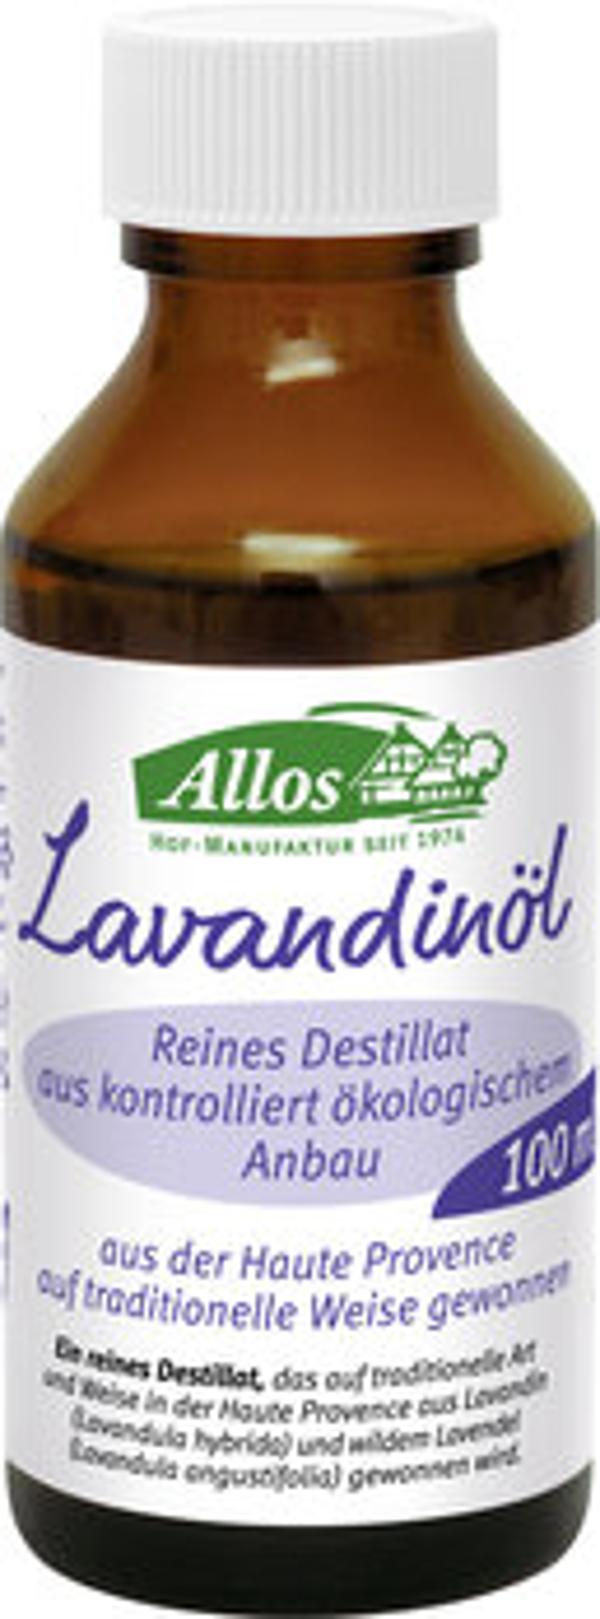 Produktfoto zu Lavandinöl reines Destillat, 20 ml